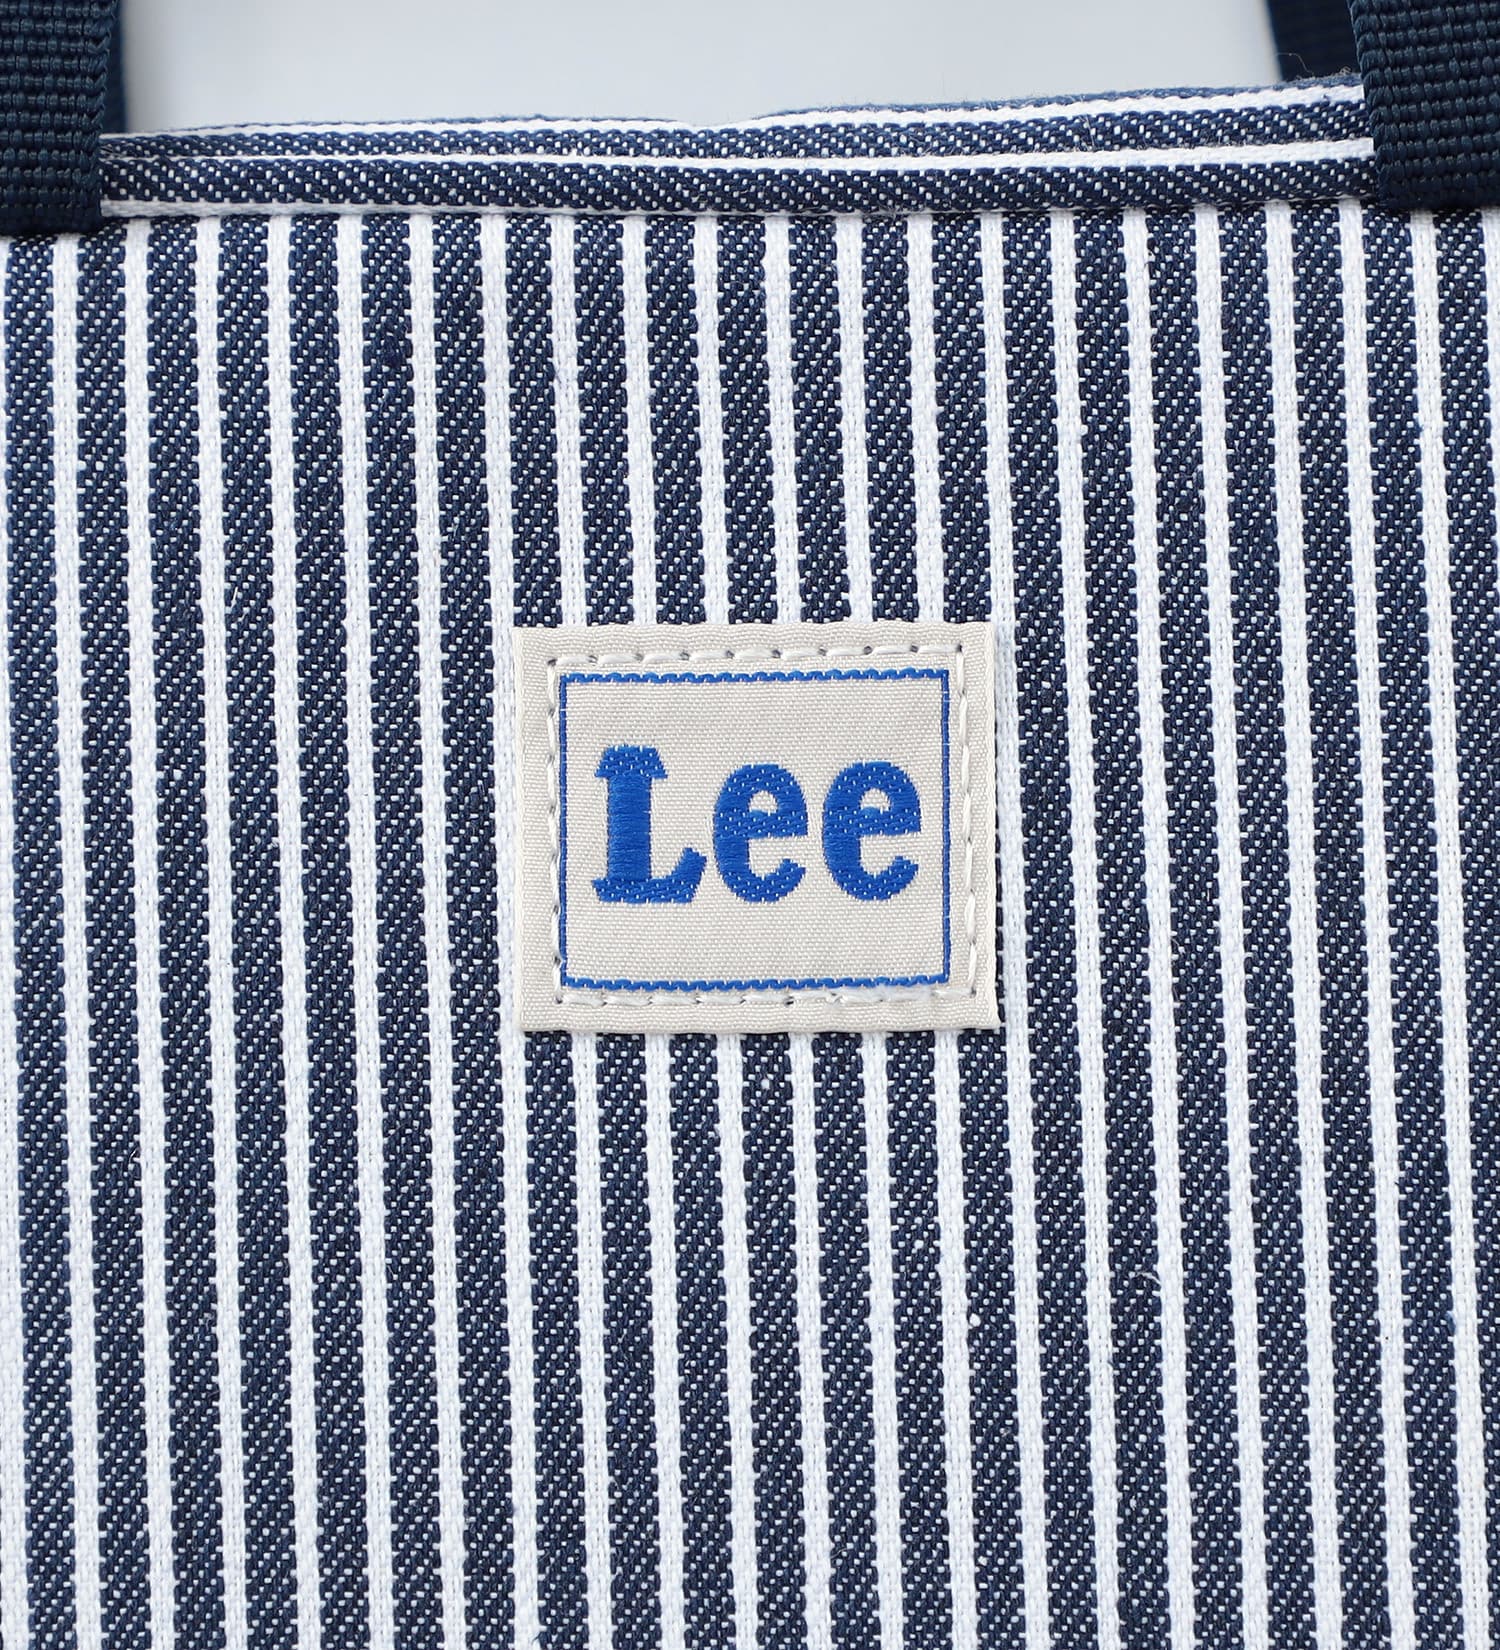 Lee(リー)の【60cm】ベビー　出産祝いにもぴったりなギフトセット|マタニティ/ベビー/ベビーギフト/キッズ|トリコロール